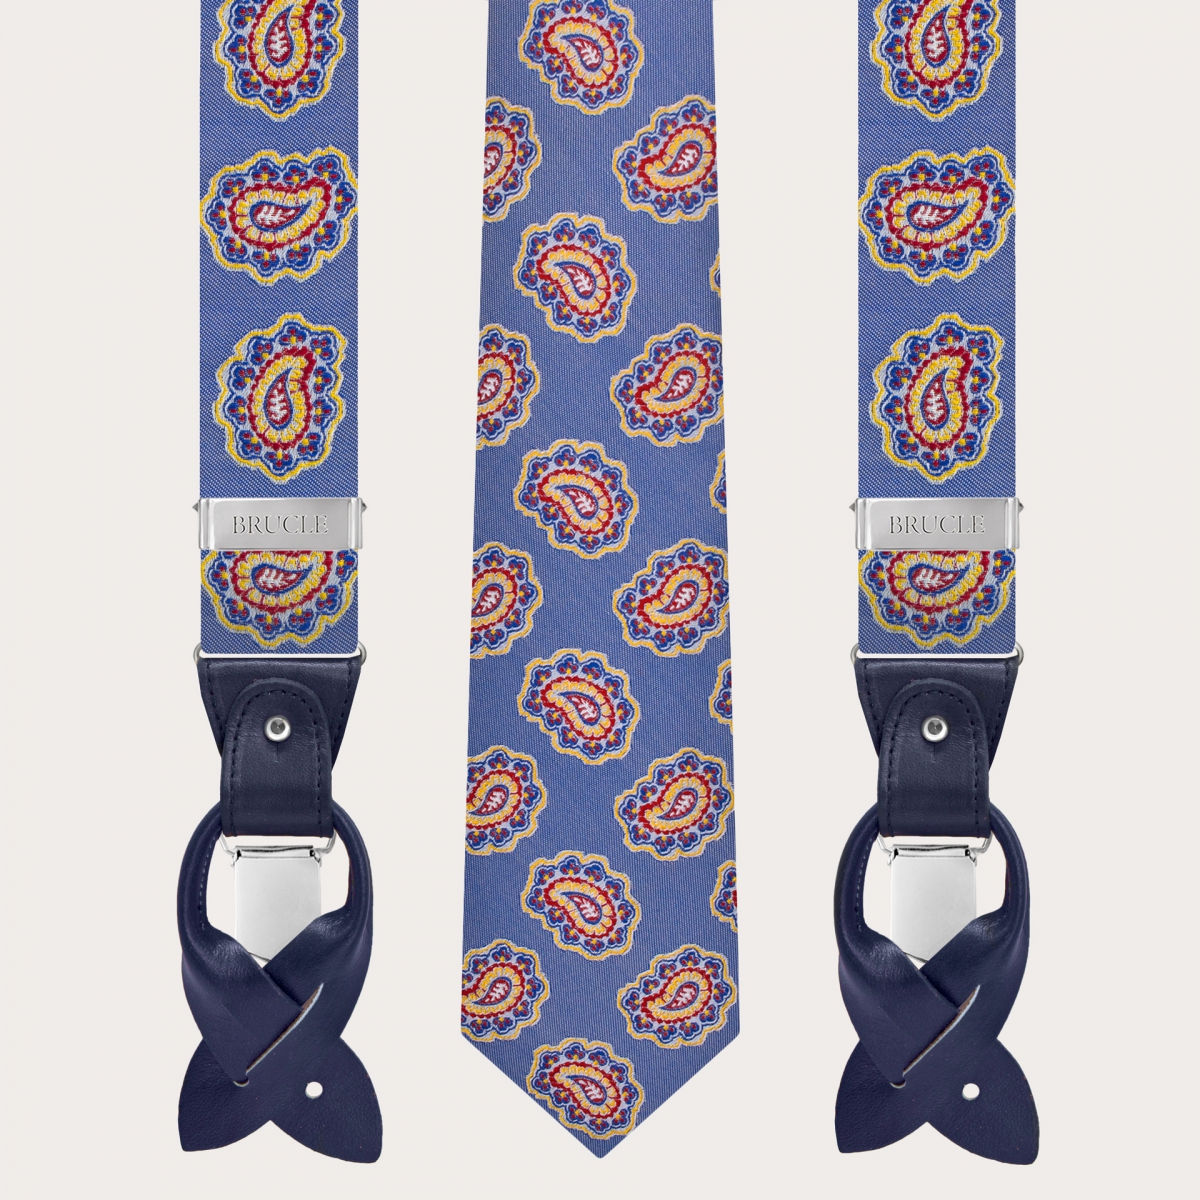 Tirantes y corbata coordinados en seda, patrón blanco y azul